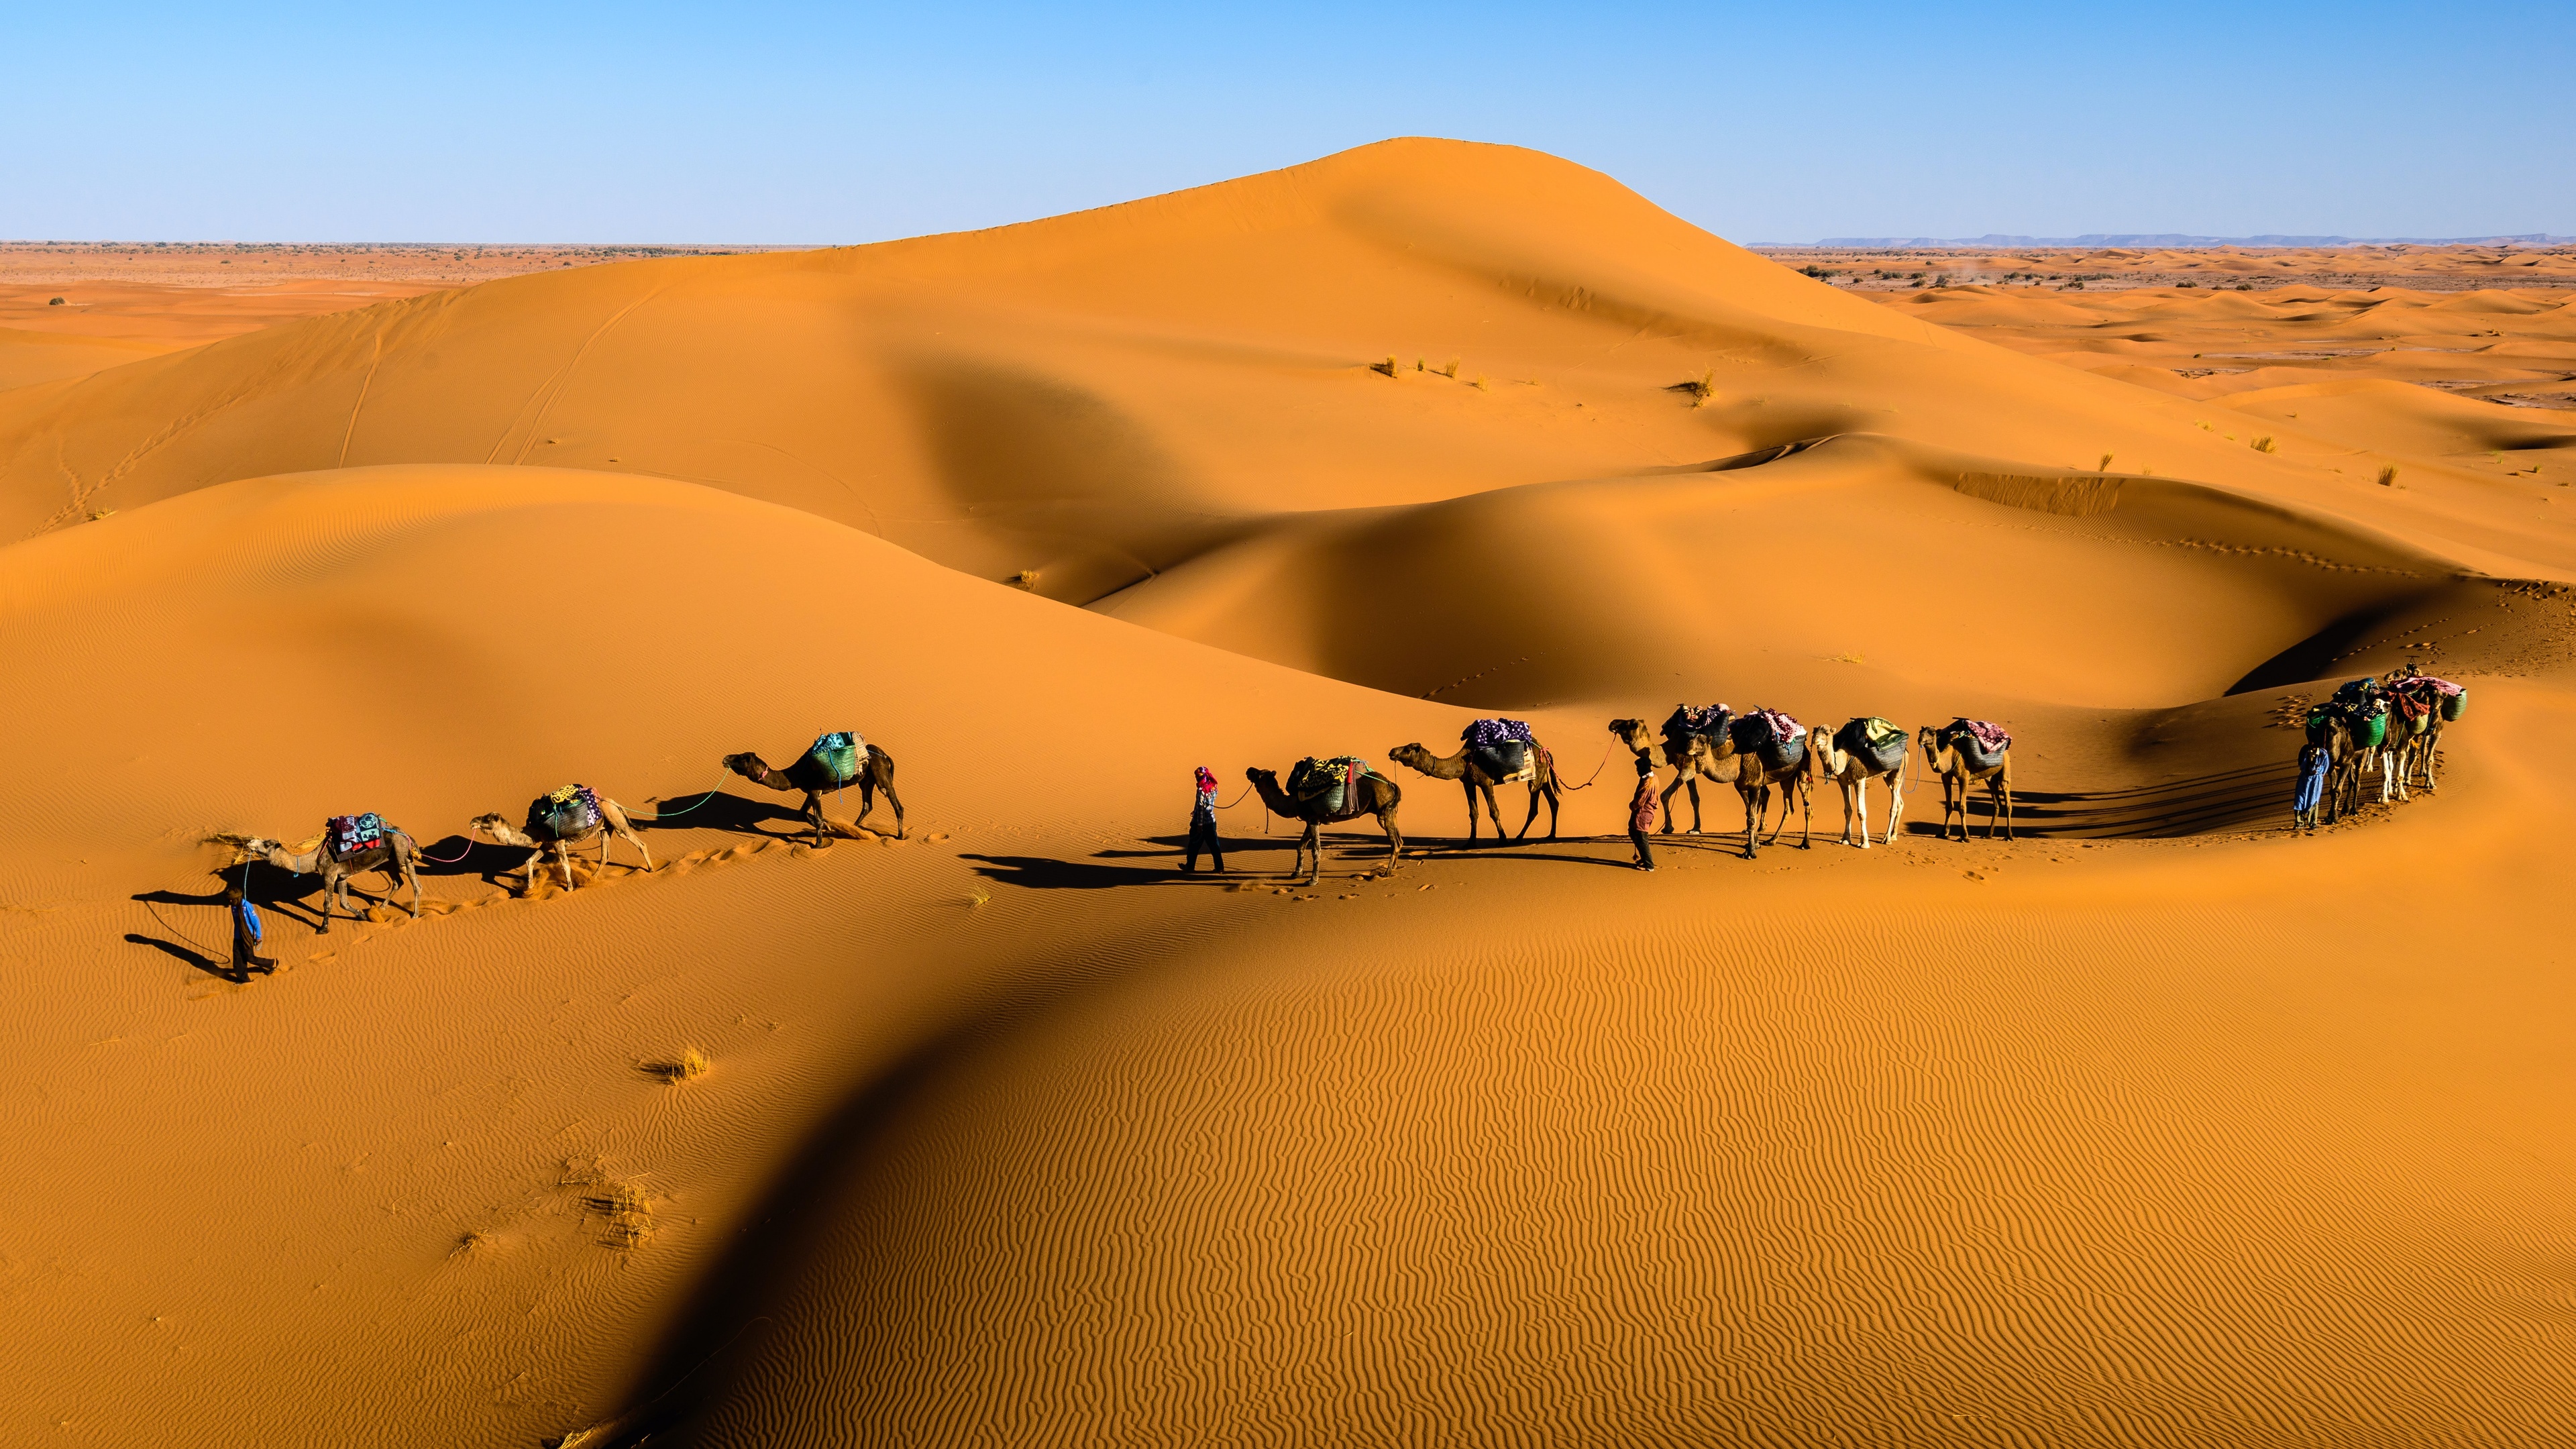 Desert Camels Dunes Nature Sand Animals Walking Landscape 3840x2160